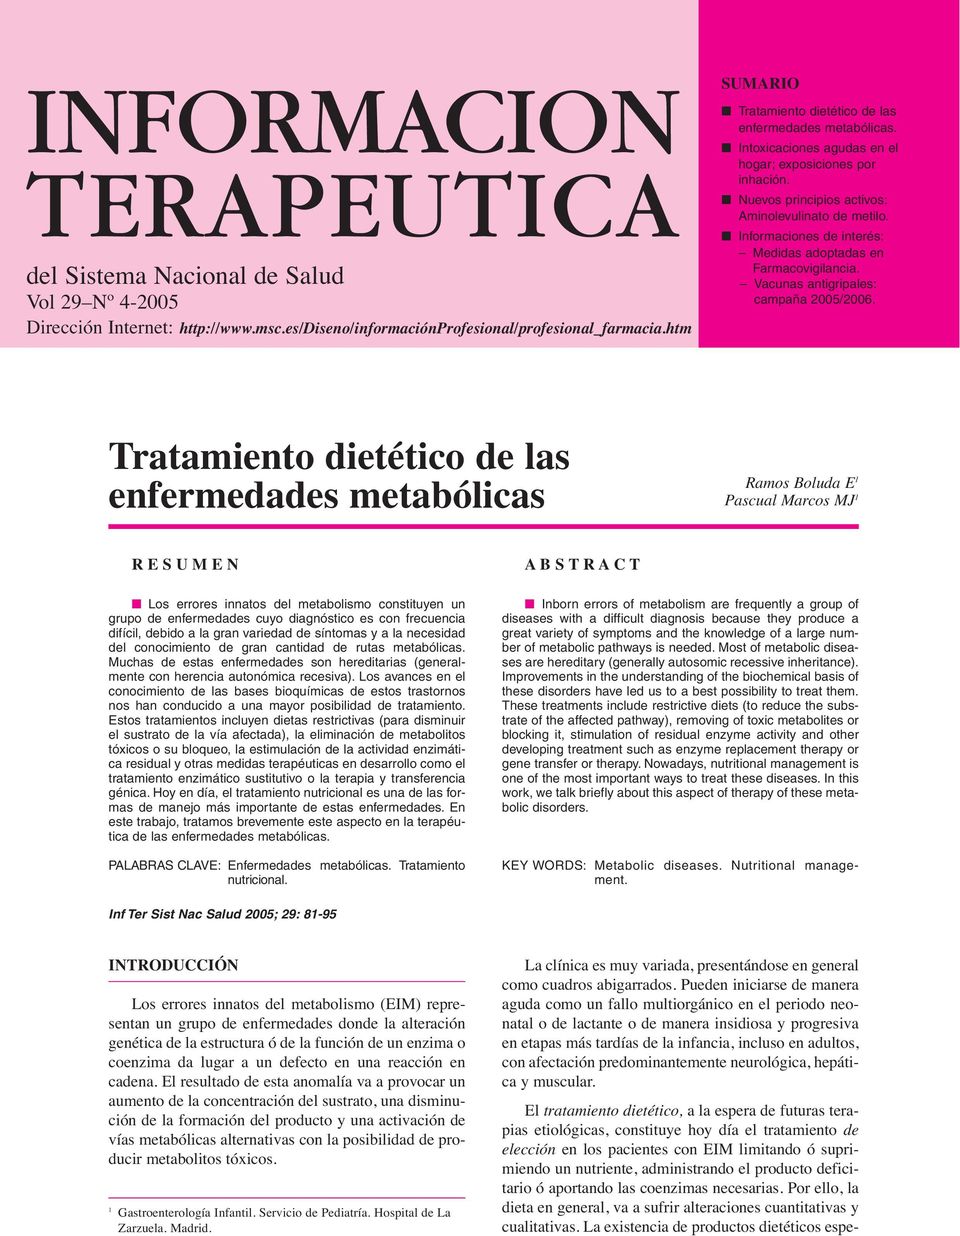 Informaciones de interés: Medidas adoptadas en Farmacovigilancia. Vacunas antigripales: campaña 2005/2006.